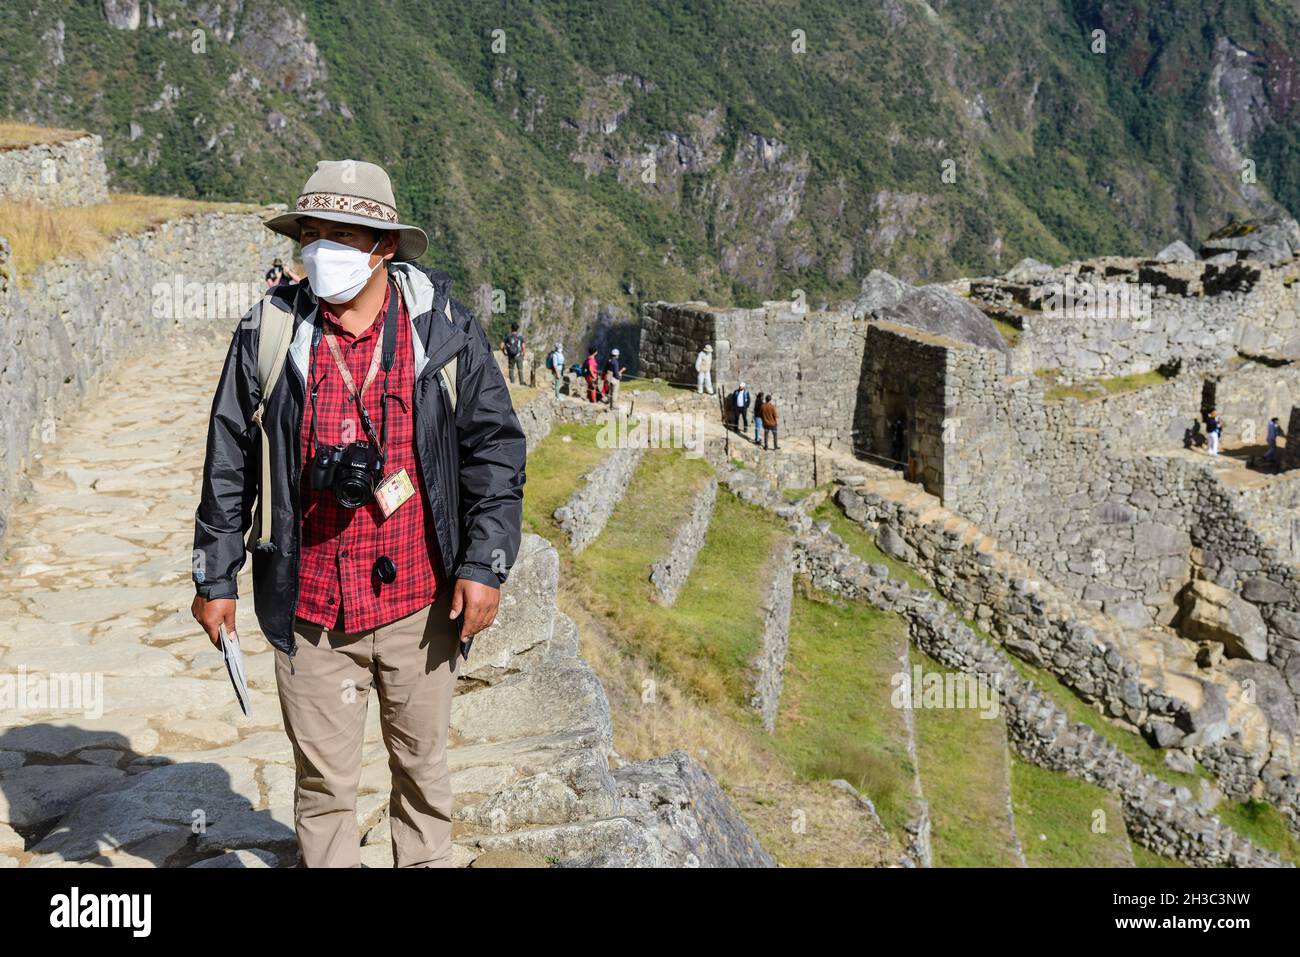 A local culture guide leads the tour of Machu Picchu. Cuzco, Peru. Stock Photo